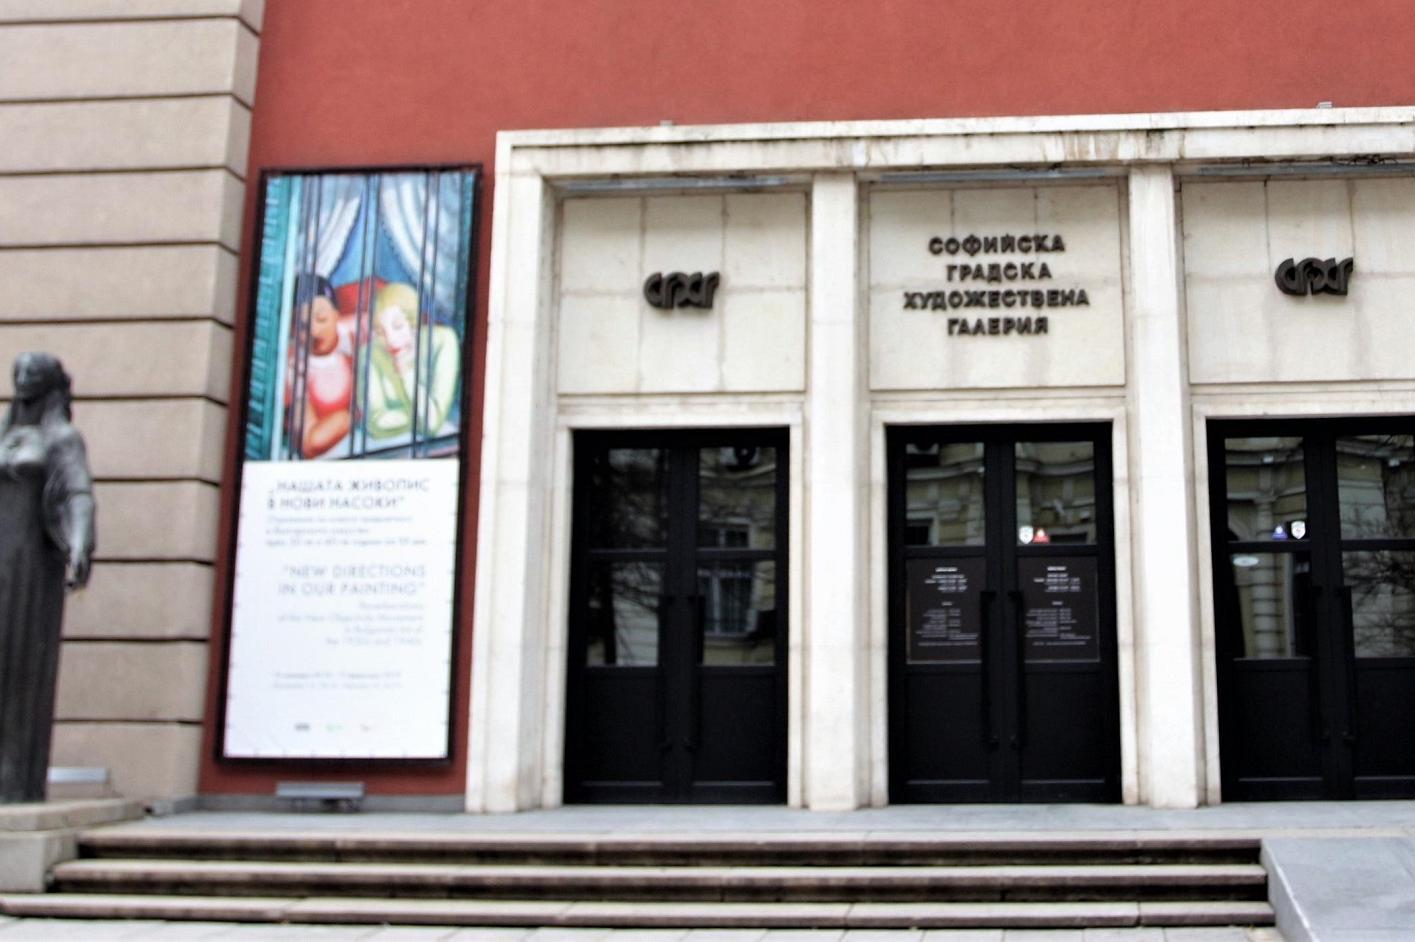 Двама изтъкнати творци в Софийската градска художествена галерия